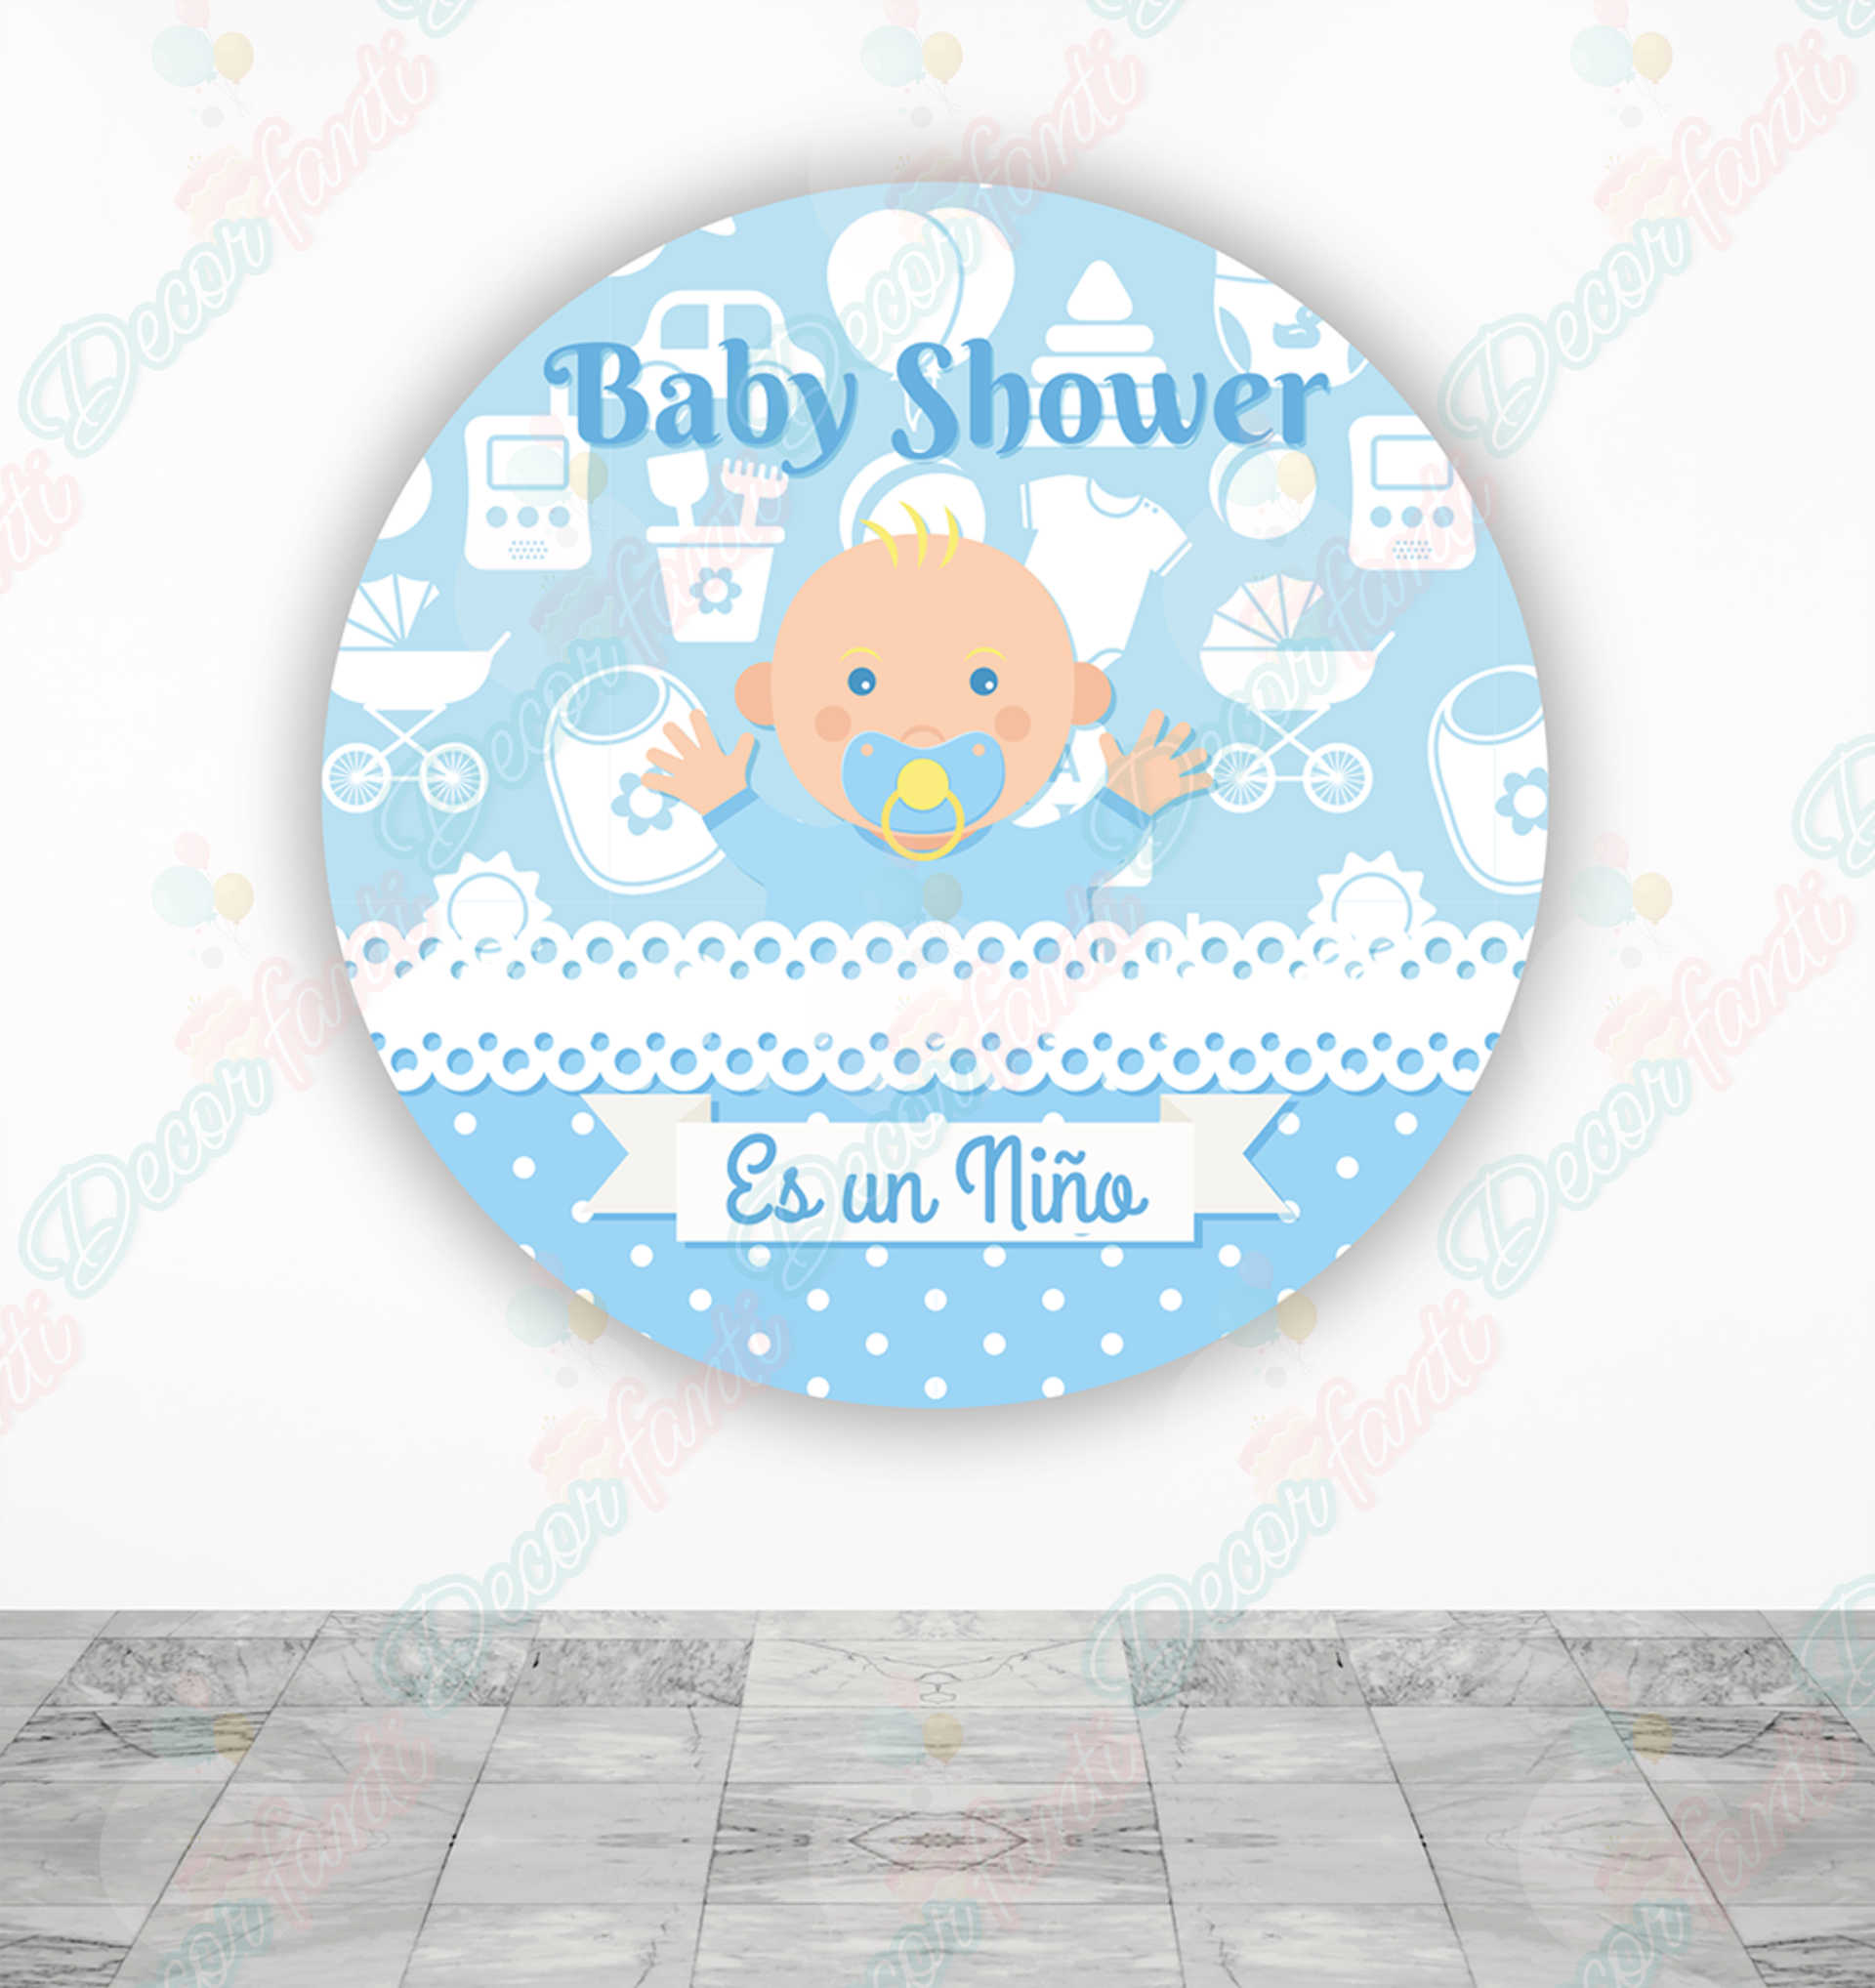 Baby Shower niño Fundas tela sublimada para cilindros - Decorfanti